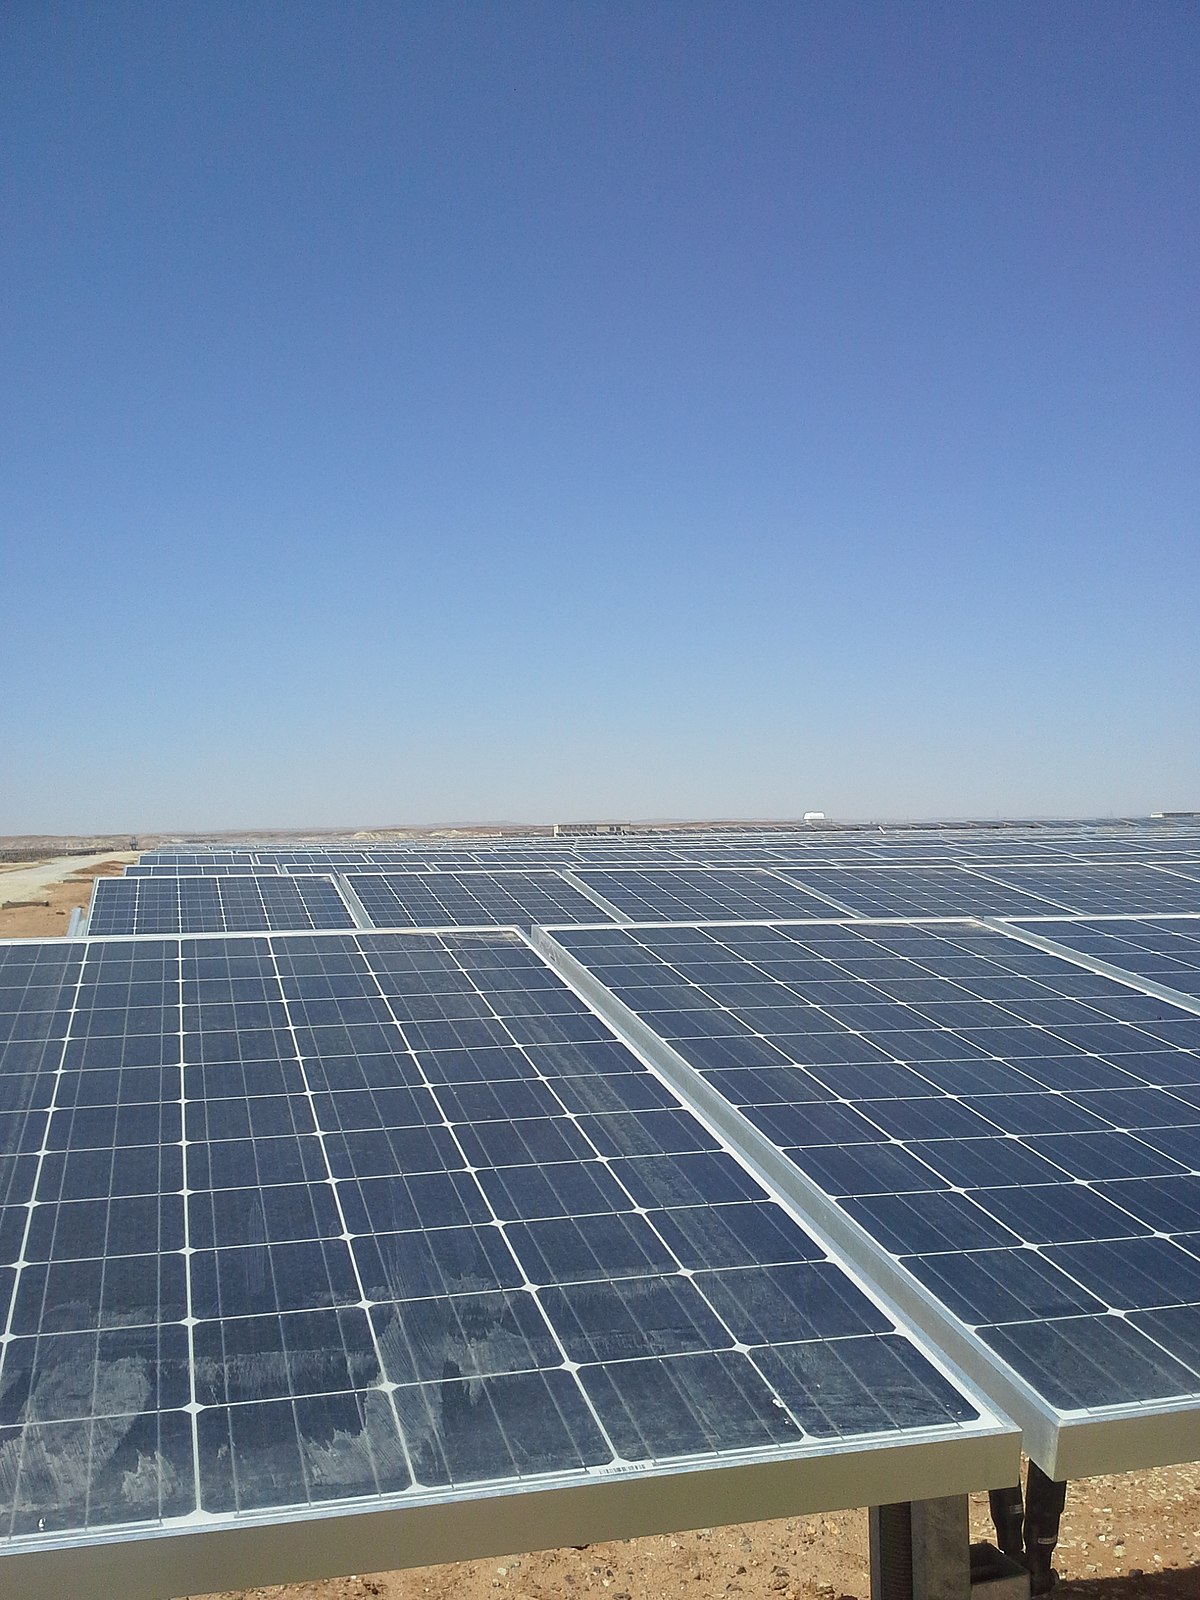 Key parts of a solar generation facility california